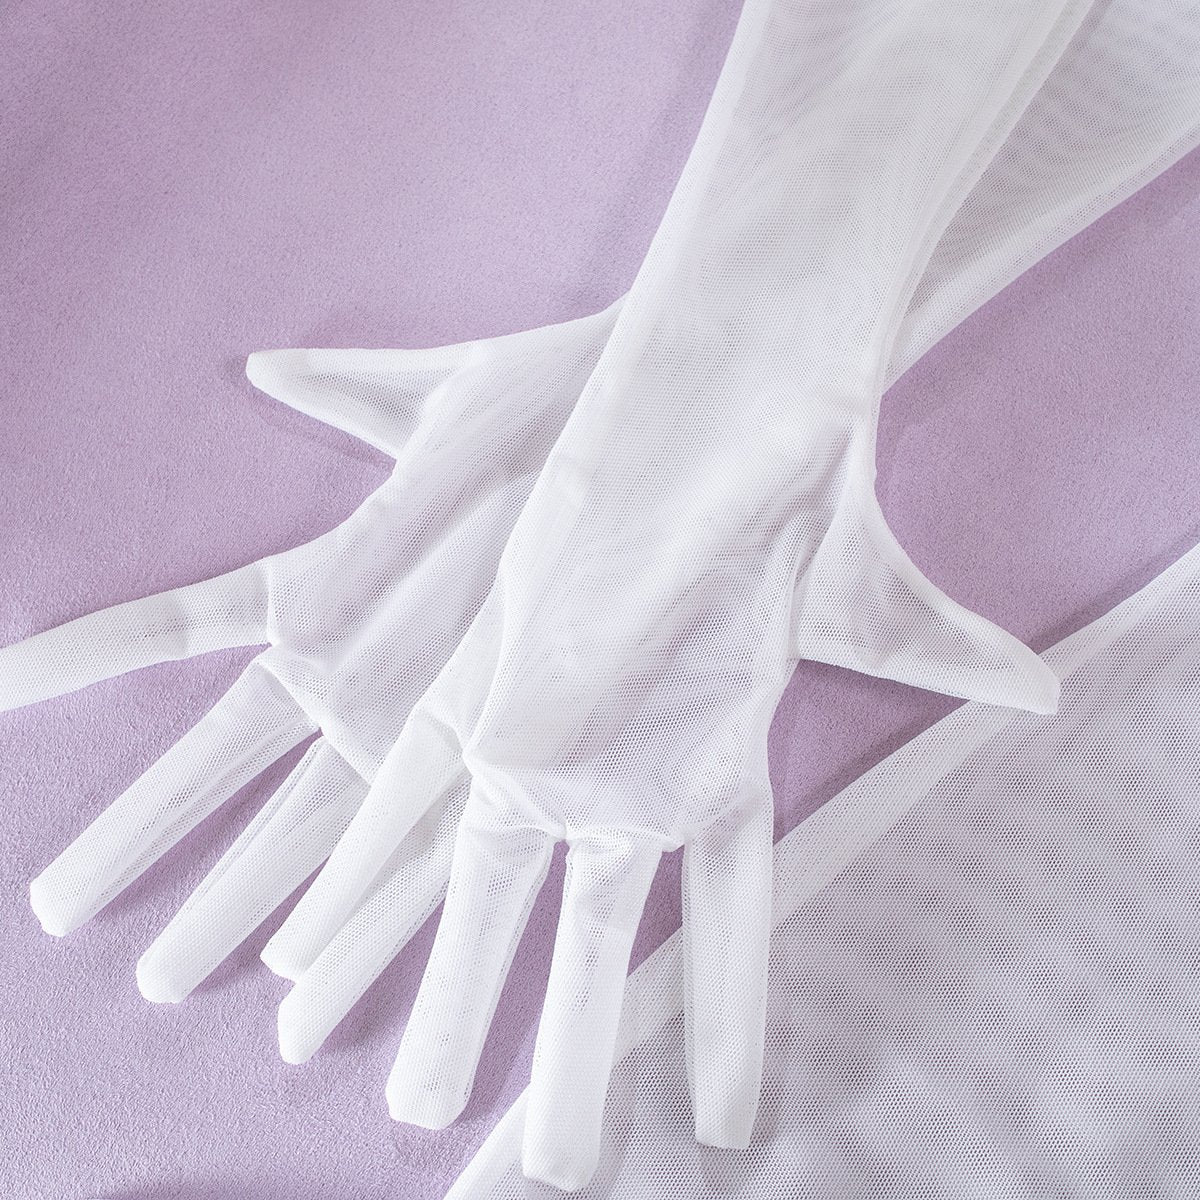 Sheer mesh gloves harness lingerie set